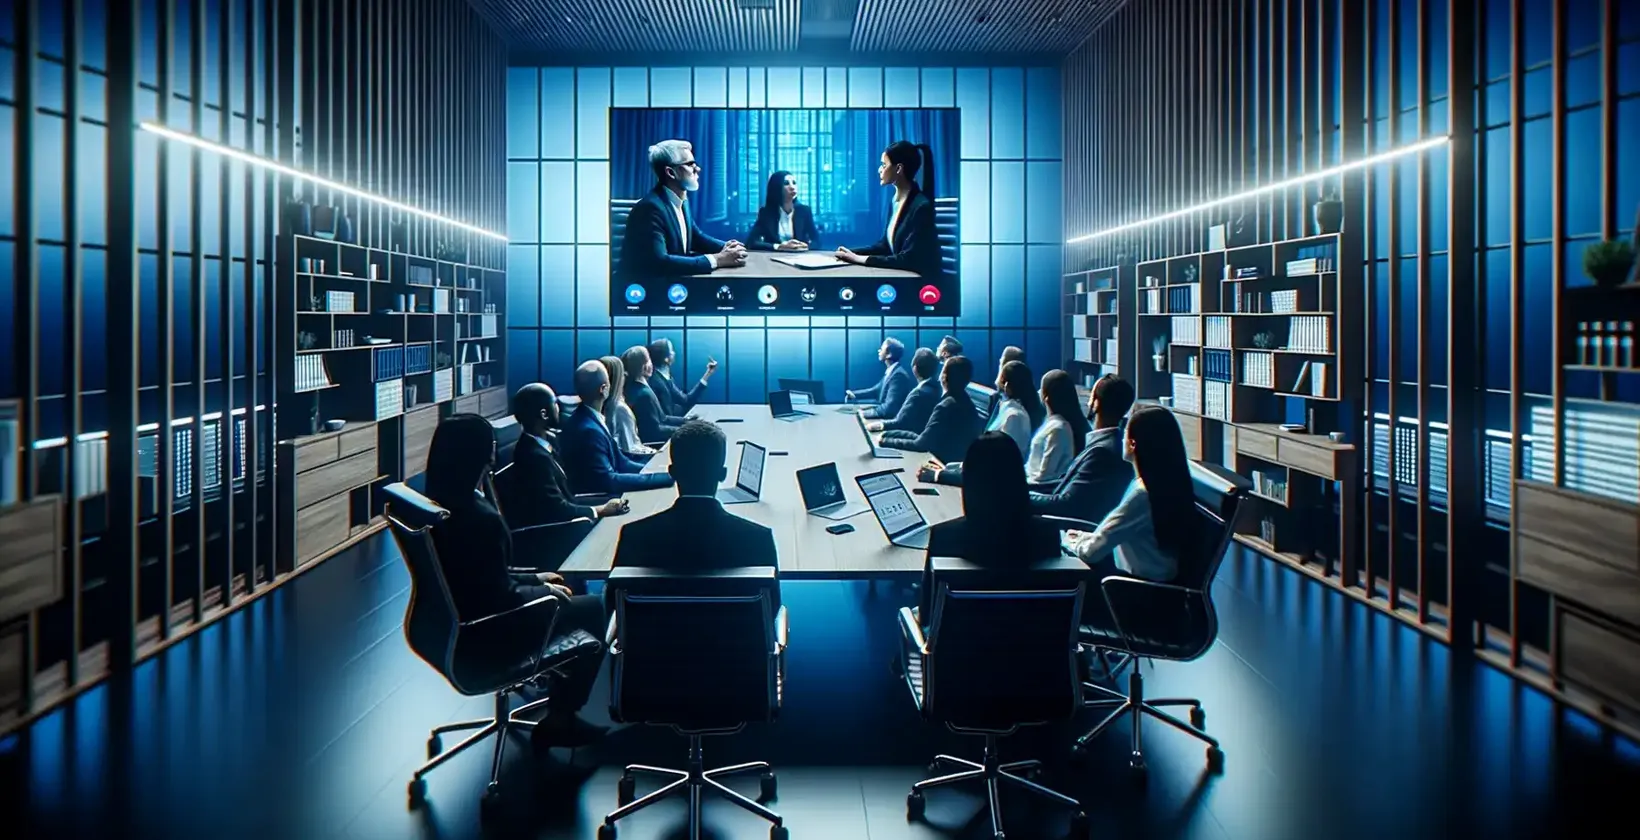 لوحظ تدوين الاجتماع بينما يشاهد المحترفون في غرفة مضاءة باللون الأزرق مكالمة فيديو لثلاثة أشخاص.